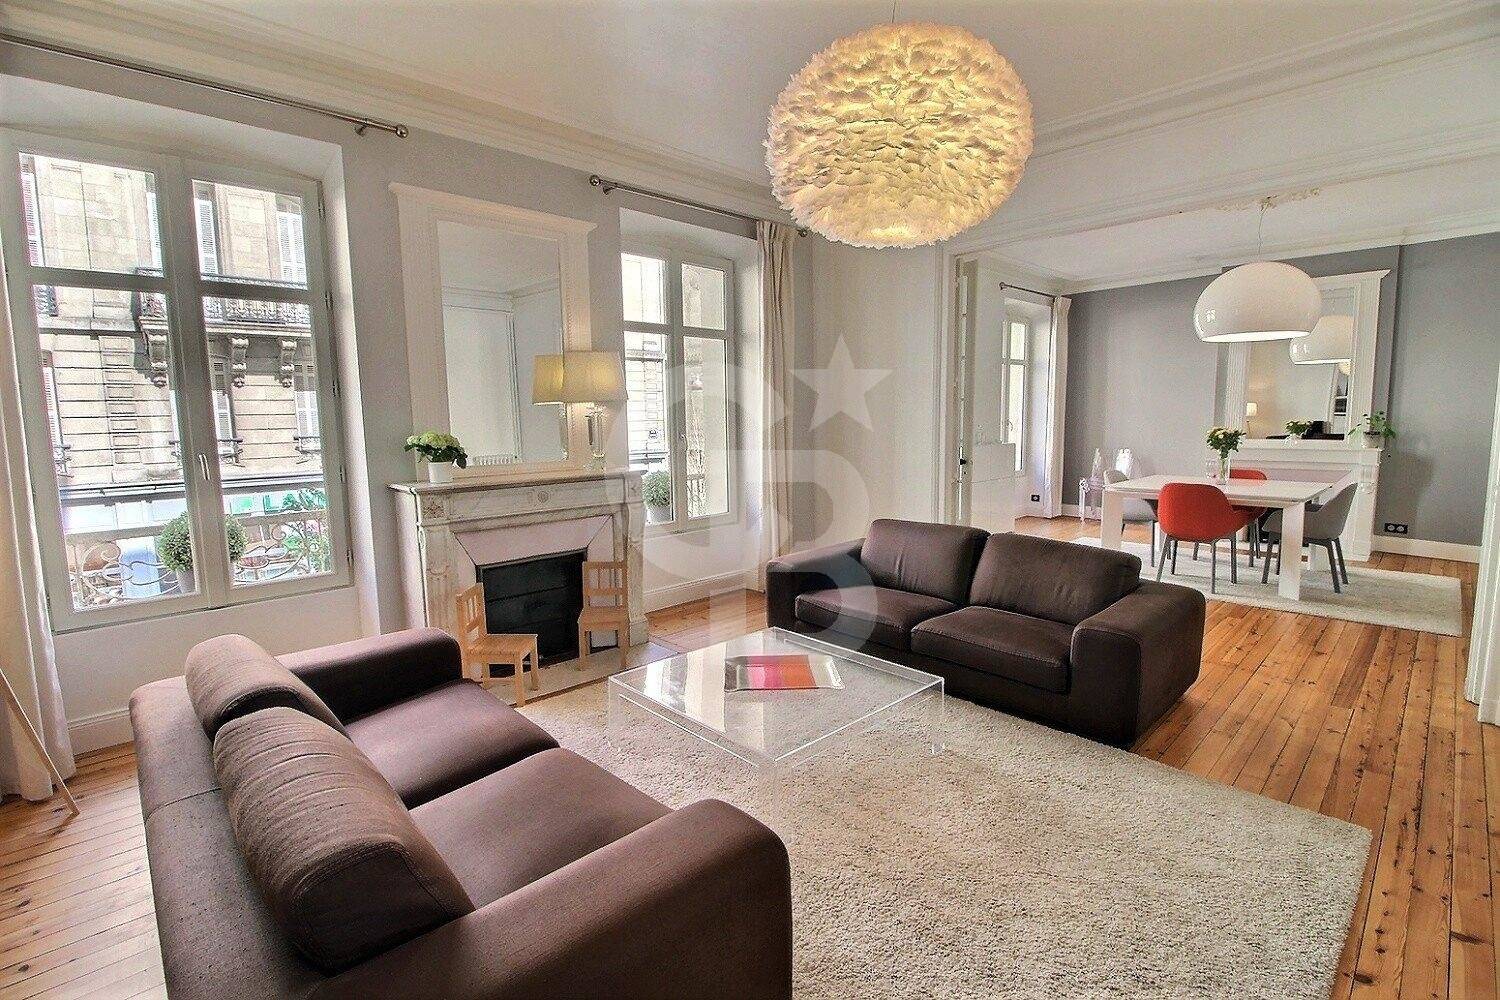 Grand appartement ancien de standing rénové aux belles prestations à vendre BORDEAUX CENTRE-VILLE PEY BERLAND